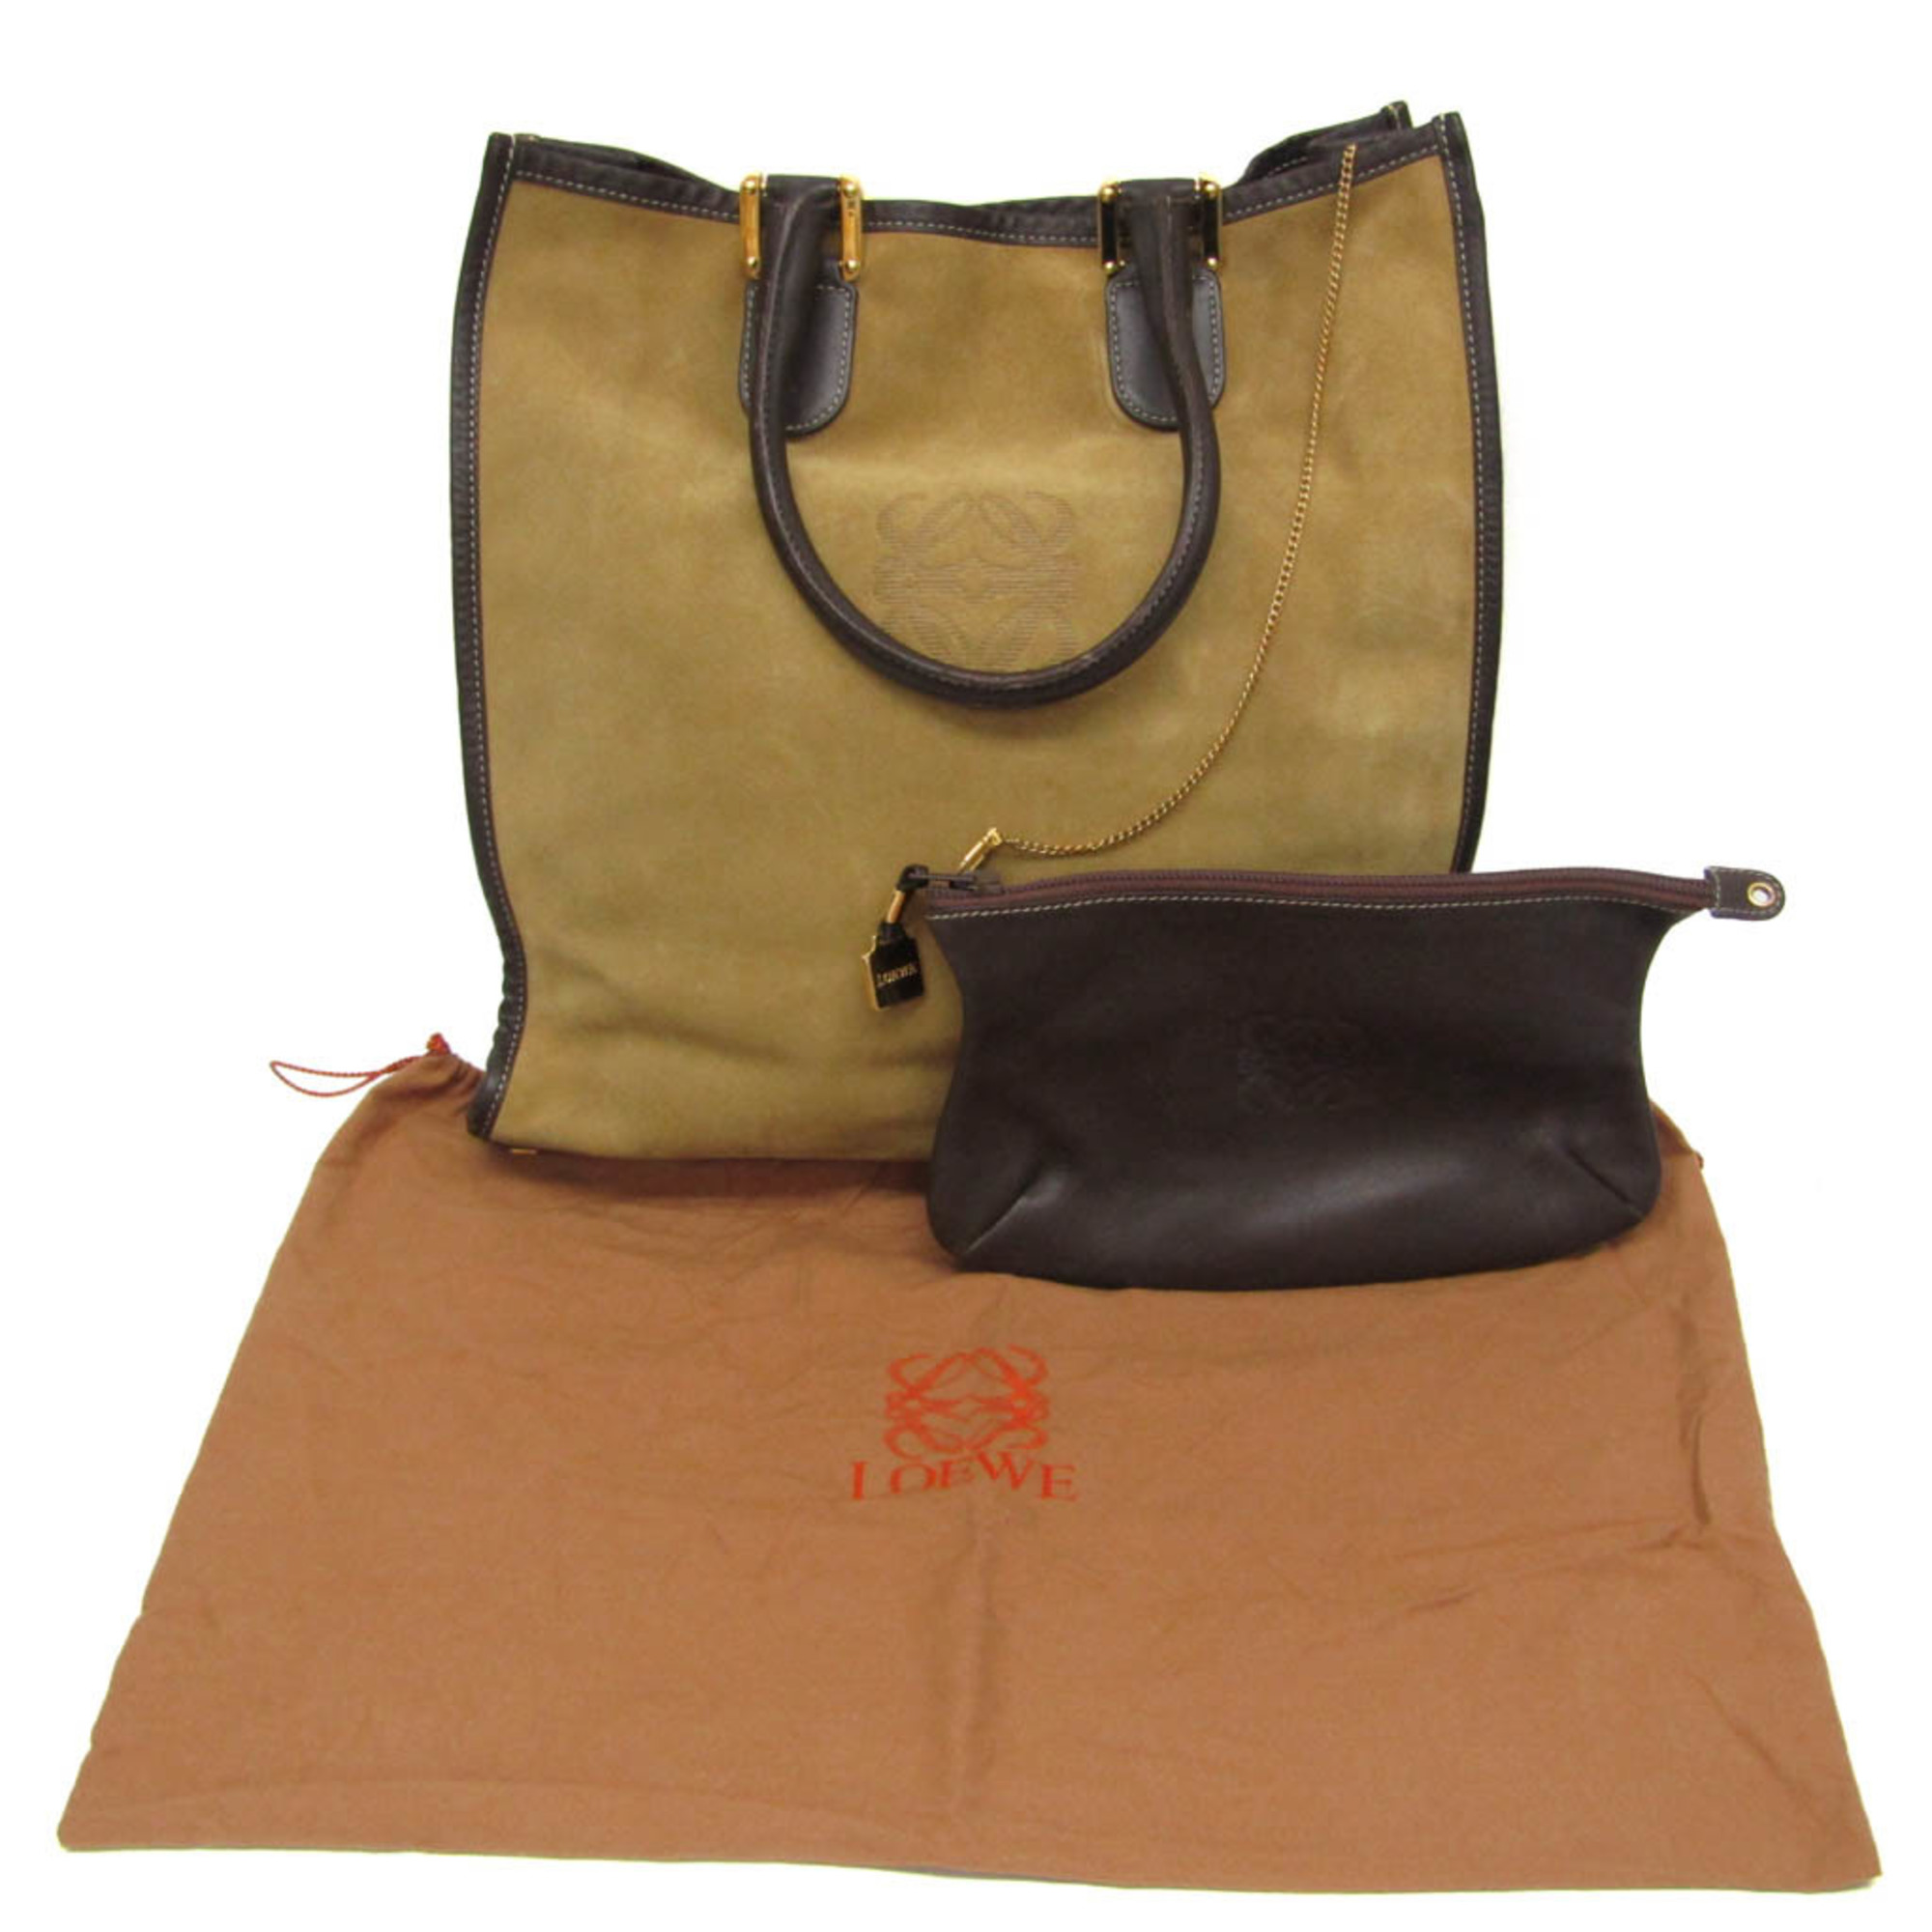 Loewe Anagram Women's Suede Tote Bag Beige,Brown